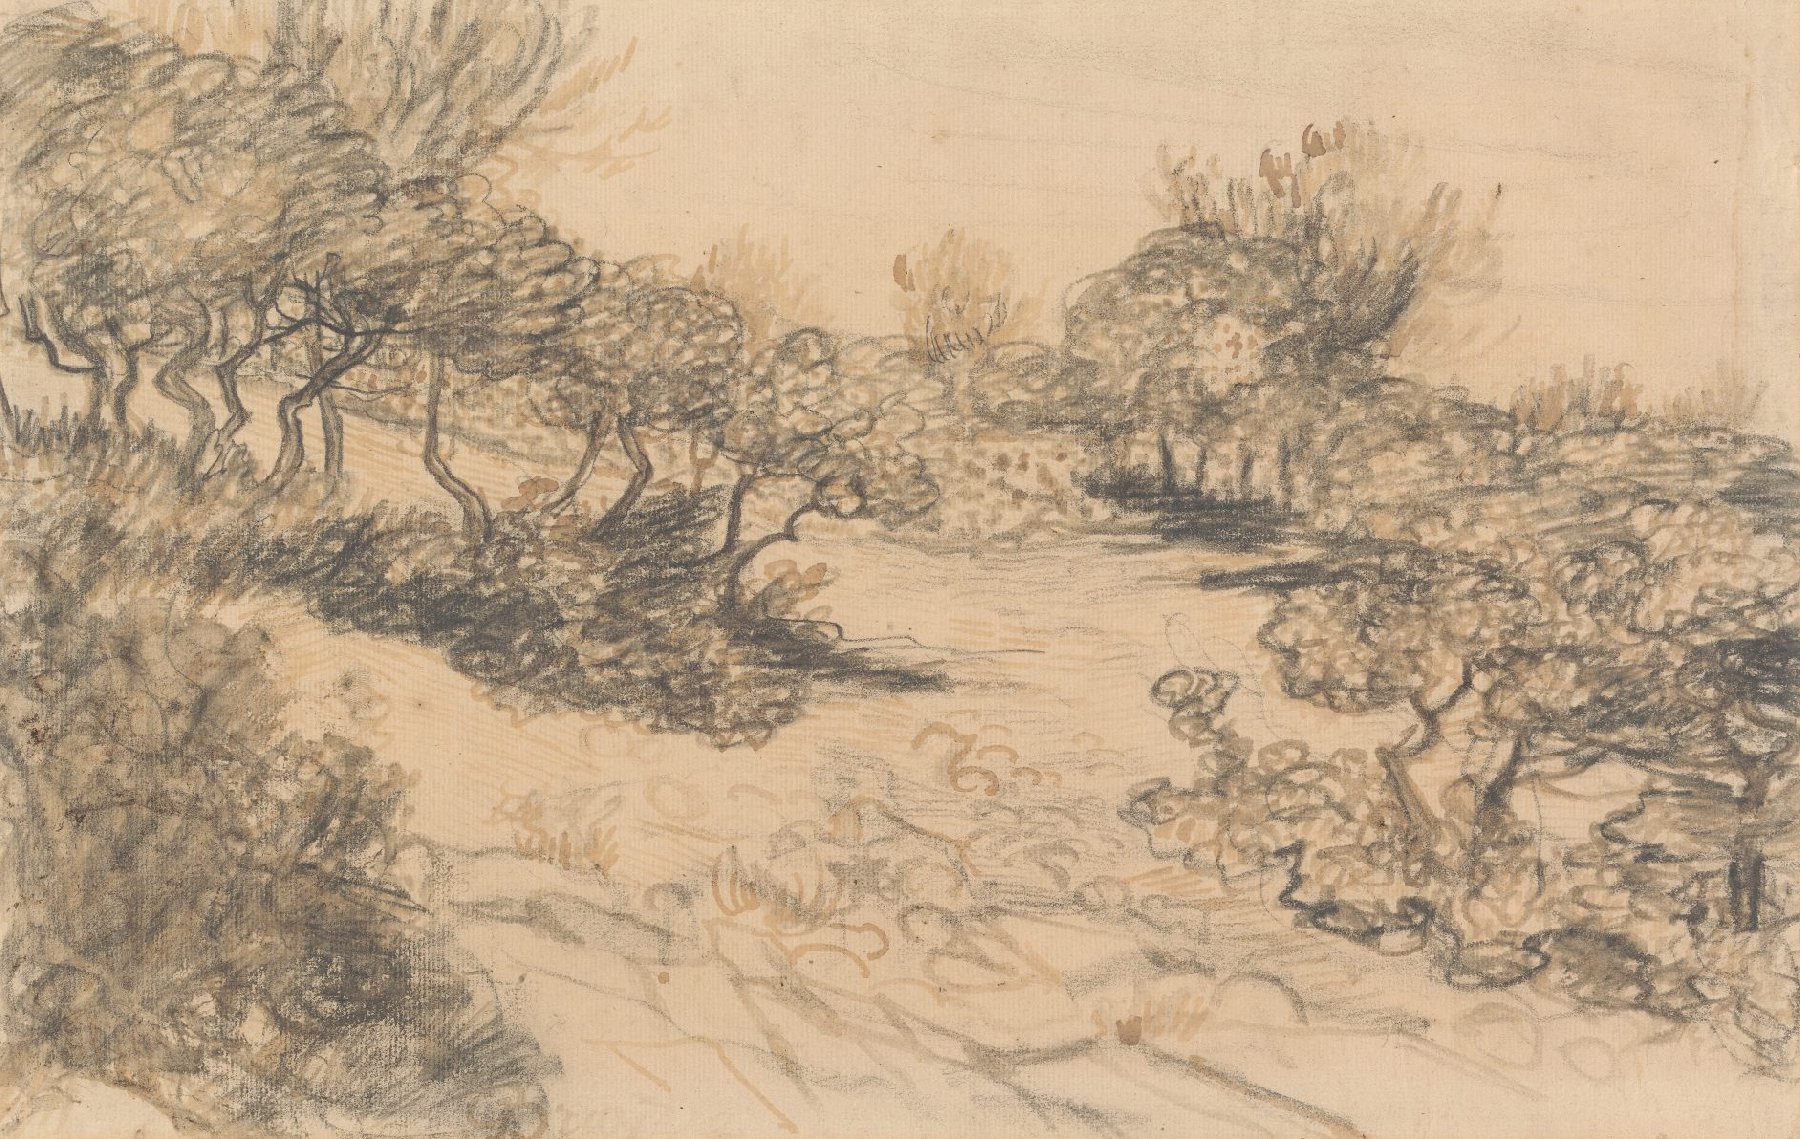 Heide Vincent van Gogh (1853 - 1890), Arles, mei 1888